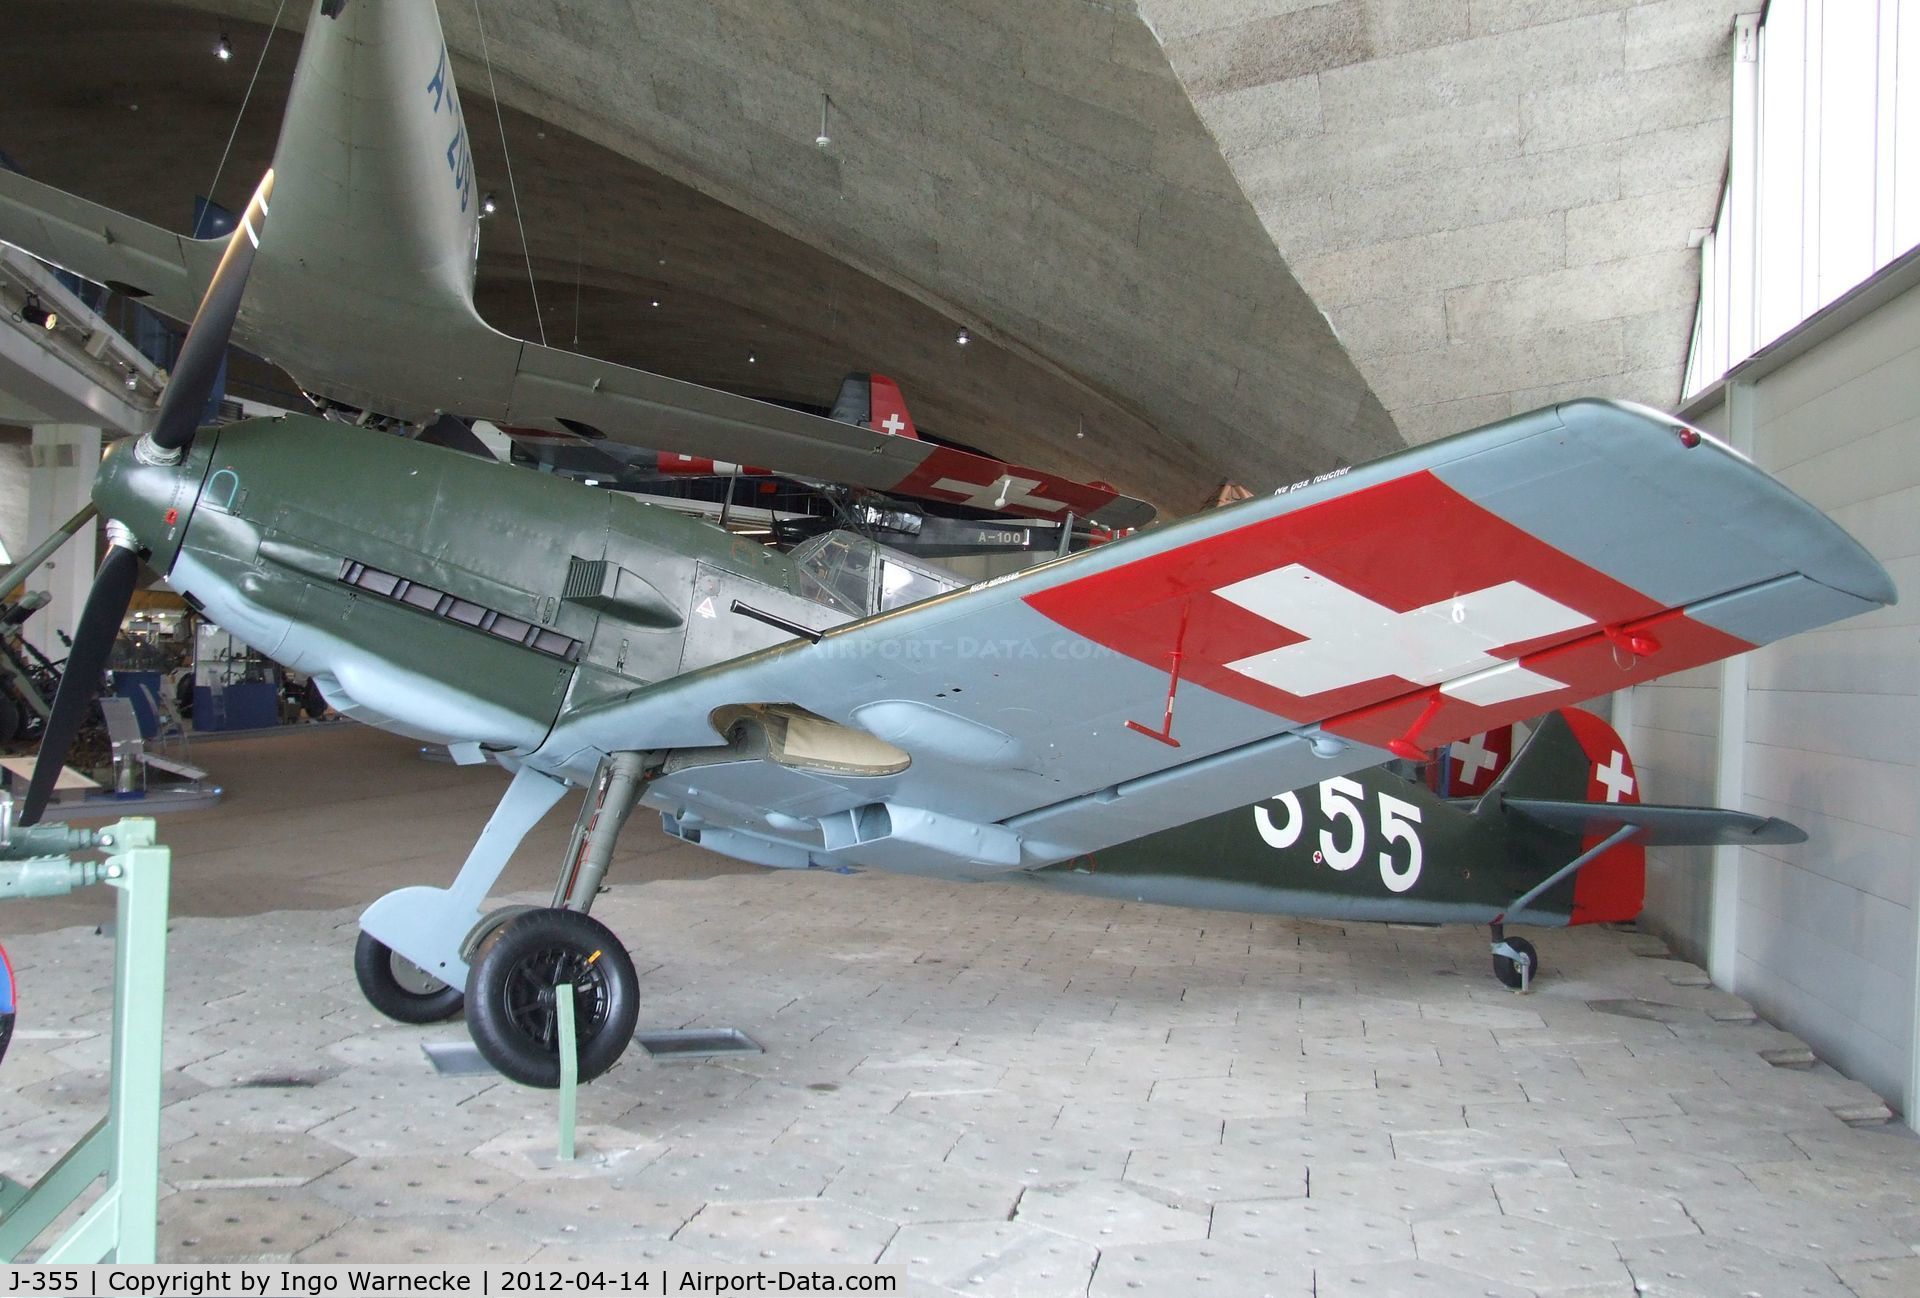 J-355, Messerschmitt Bf-109E-3 C/N 2242, Messerschmitt Bf 109E-3 at the Flieger-Flab-Museum, Dübendorf